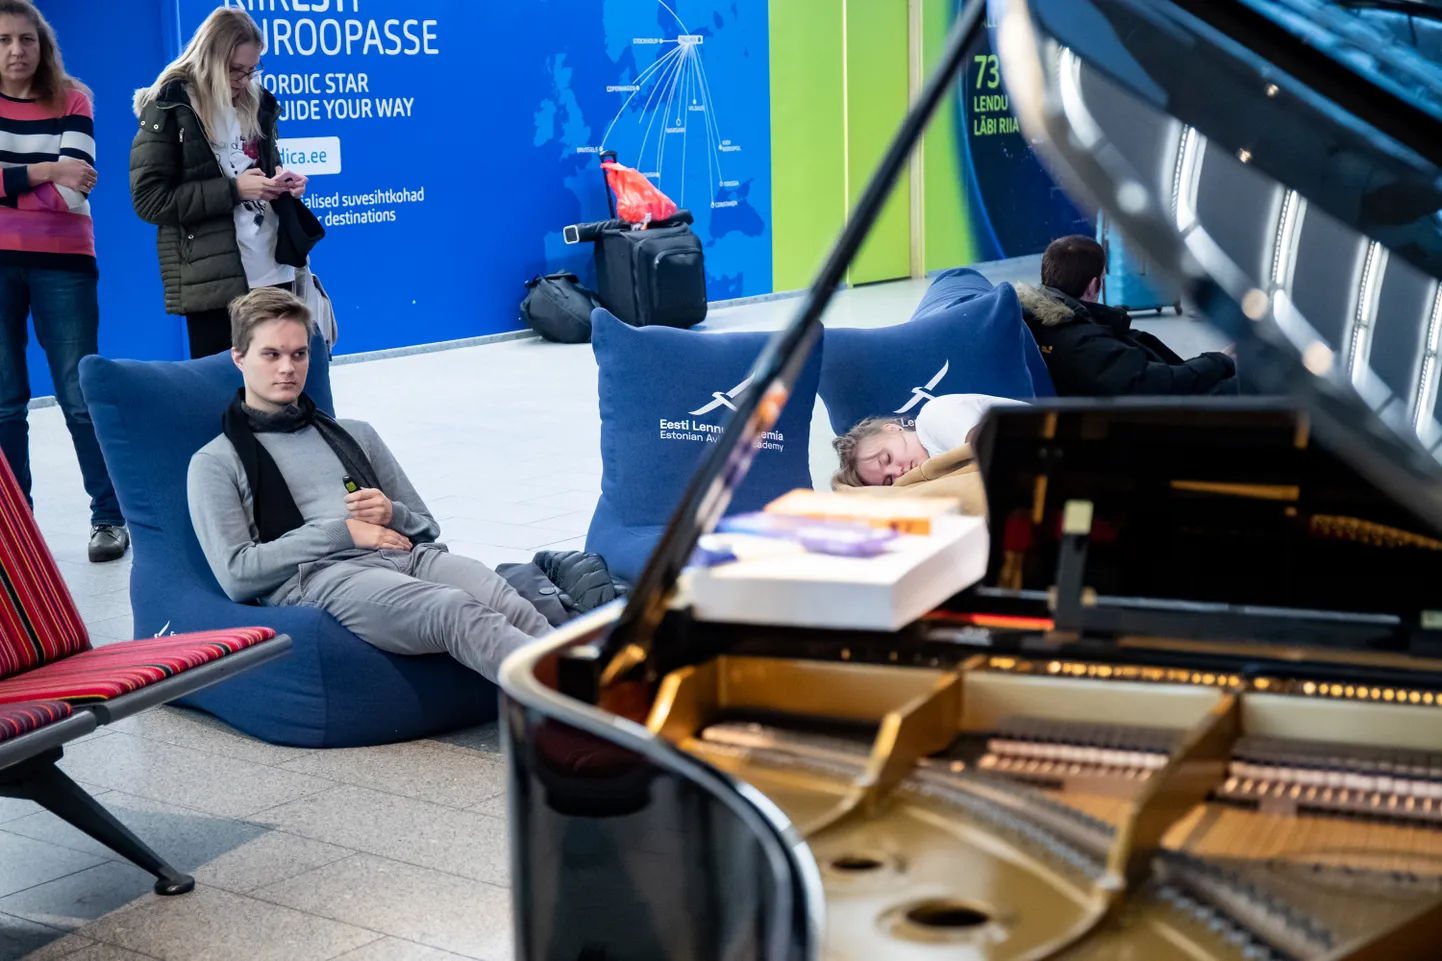 Нарвский погранпункт сделают уютнее, взяв за образец Таллиннский аэропорт, который в 2018 году удостоился титула самого удобного для клиентов аэропорта Европы.